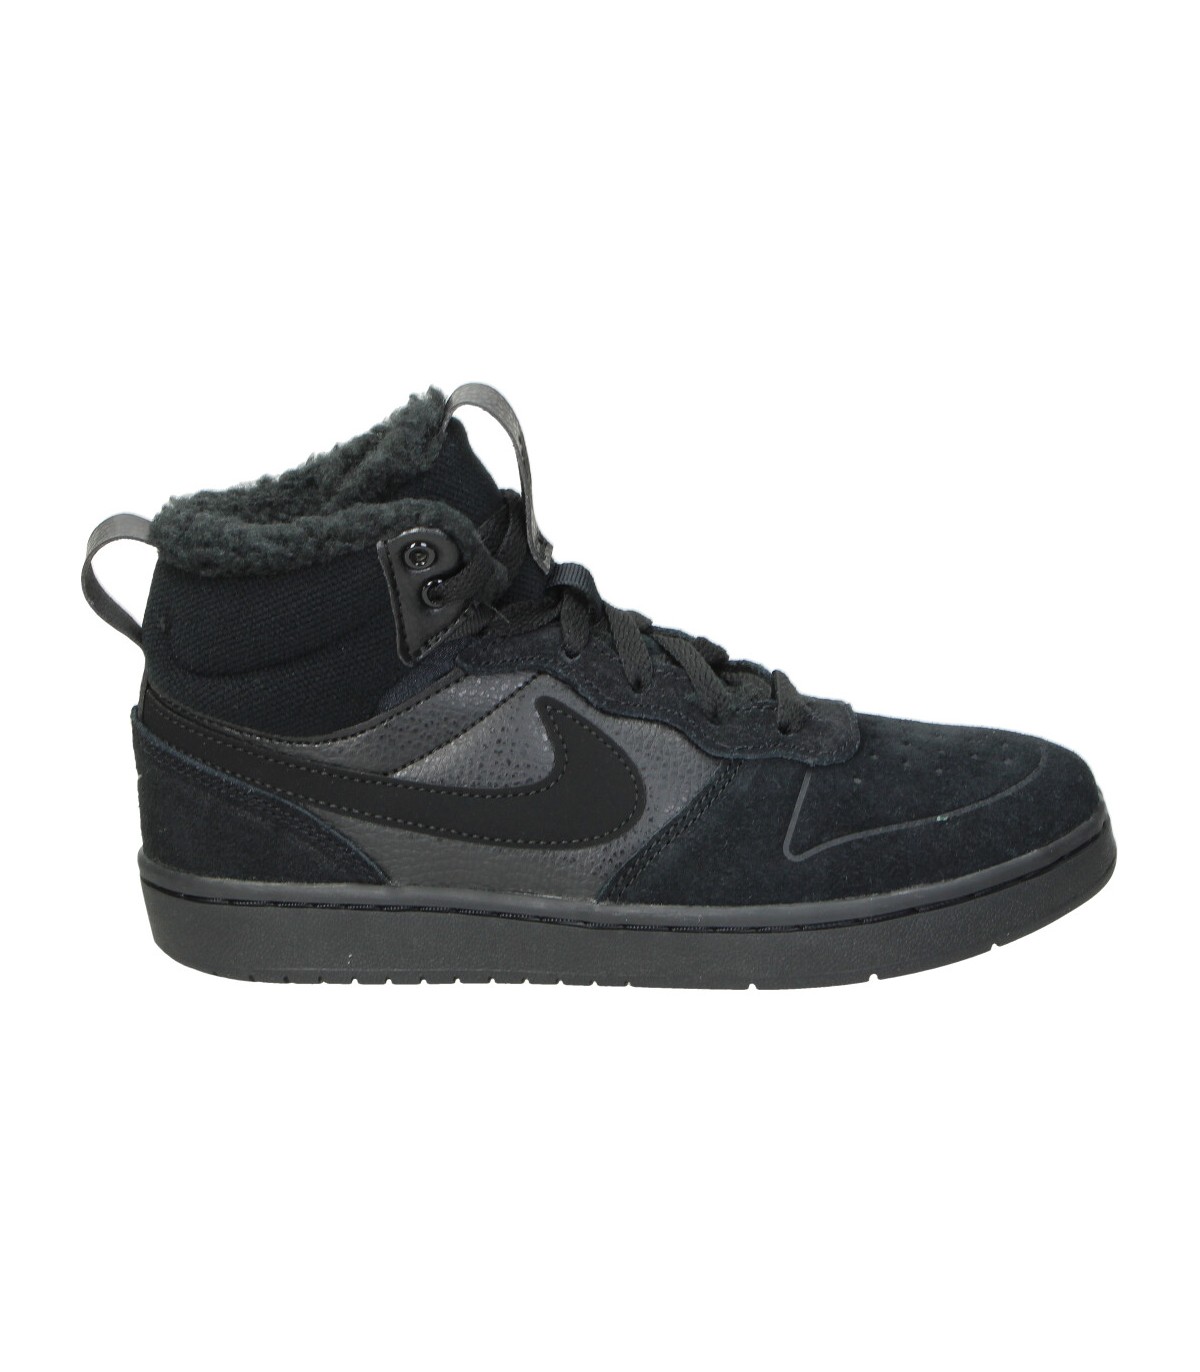 Zapatillas negras para niño Nike Court Borough Mid 2 MEGACALZADO